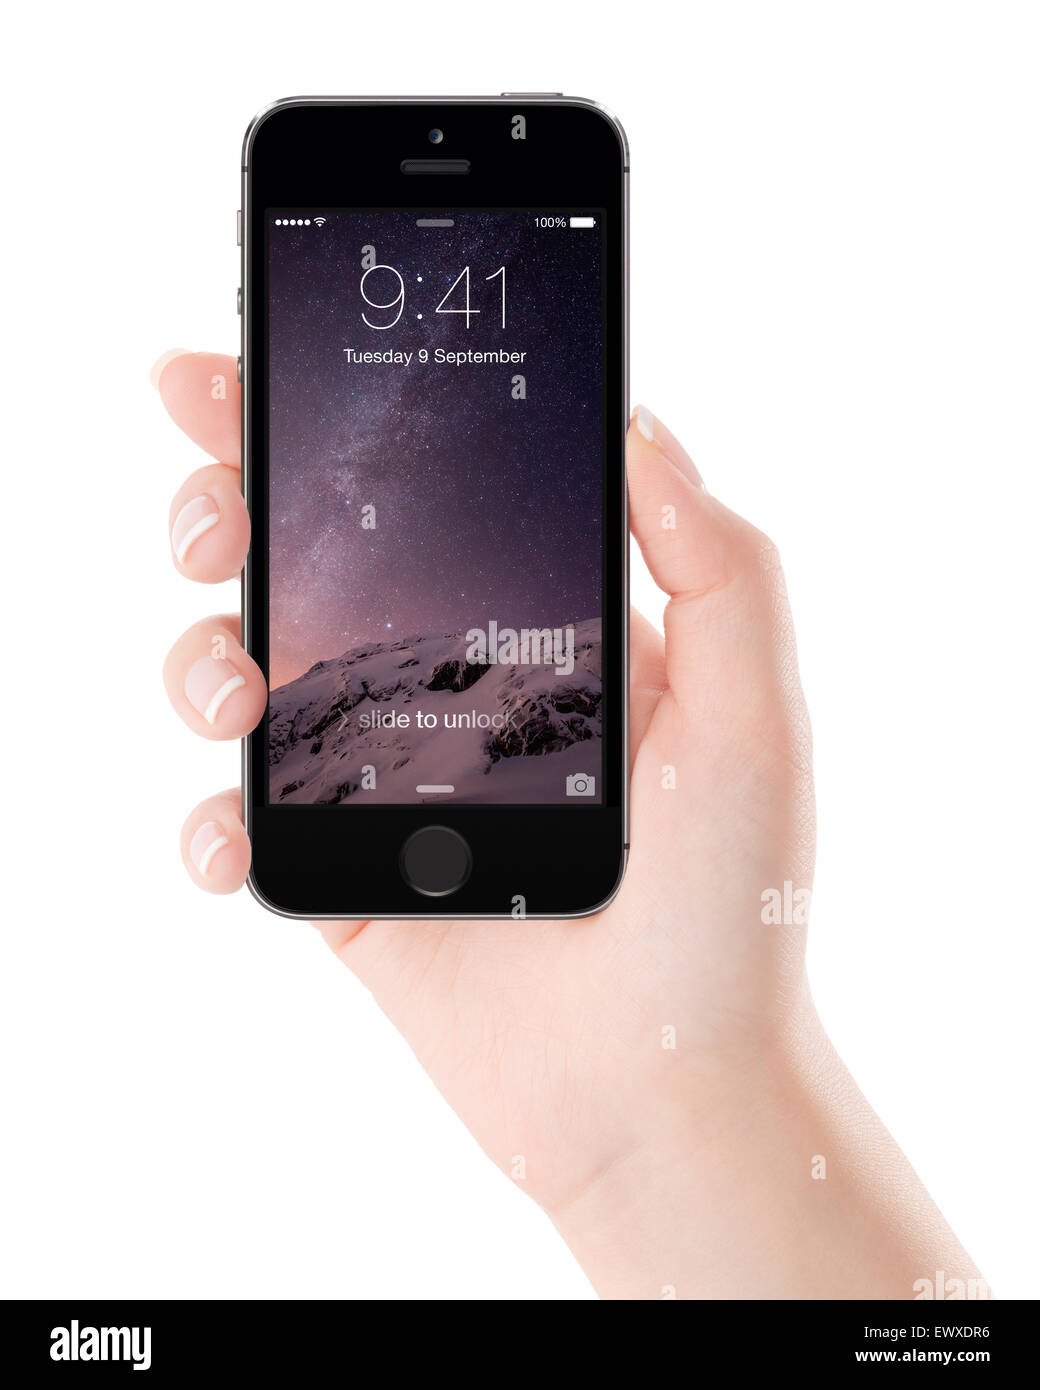 Varna, Bulgarien - 7. Dezember 2013: Weibliche Hand, hält Apple Space Grau iPhone 5 s mit Lock-Bildschirm auf dem display Stockfoto